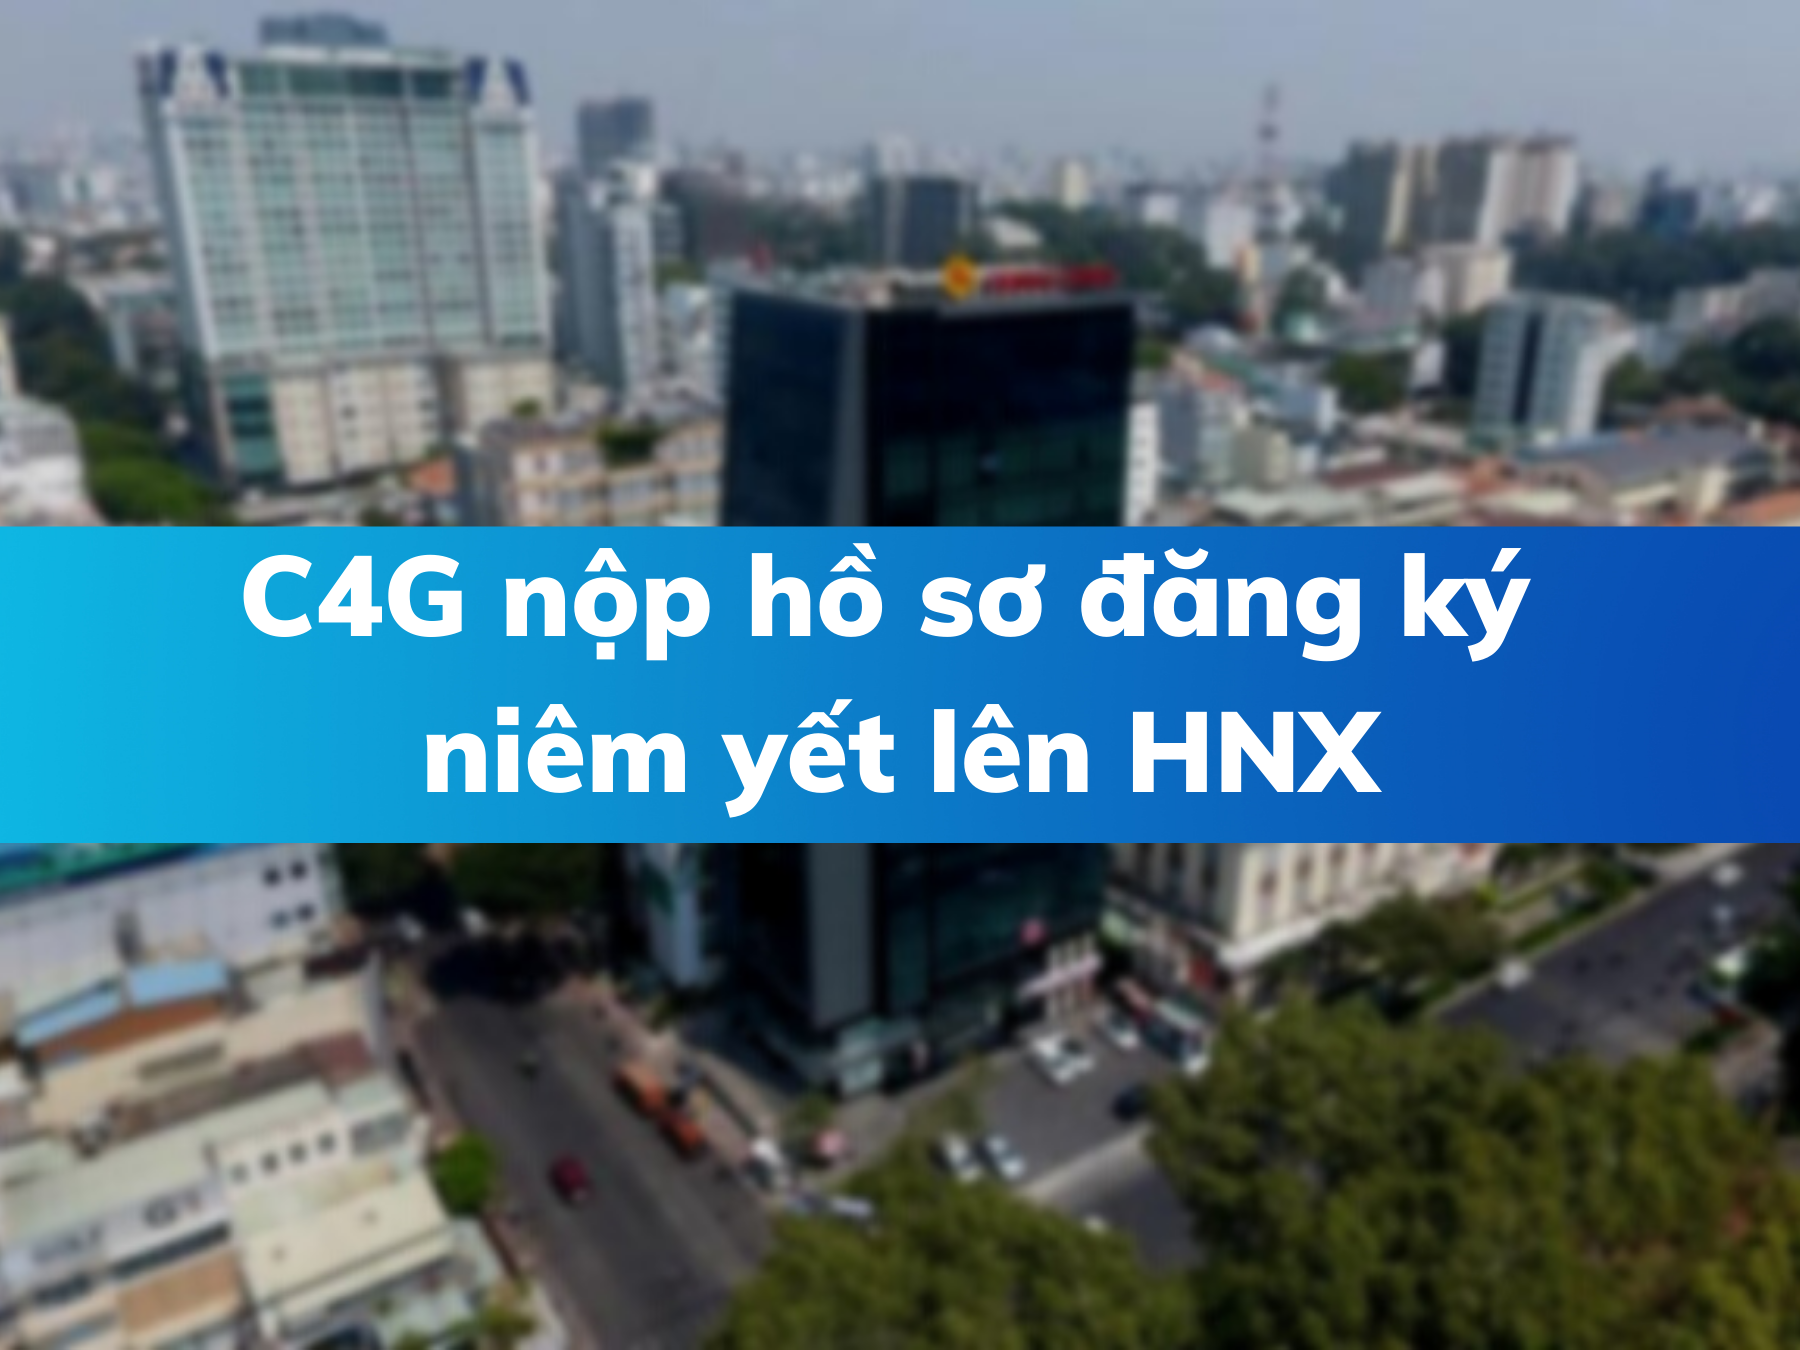 C4G: Cienco4 nộp hồ sơ đăng ký niêm yết lên HNX